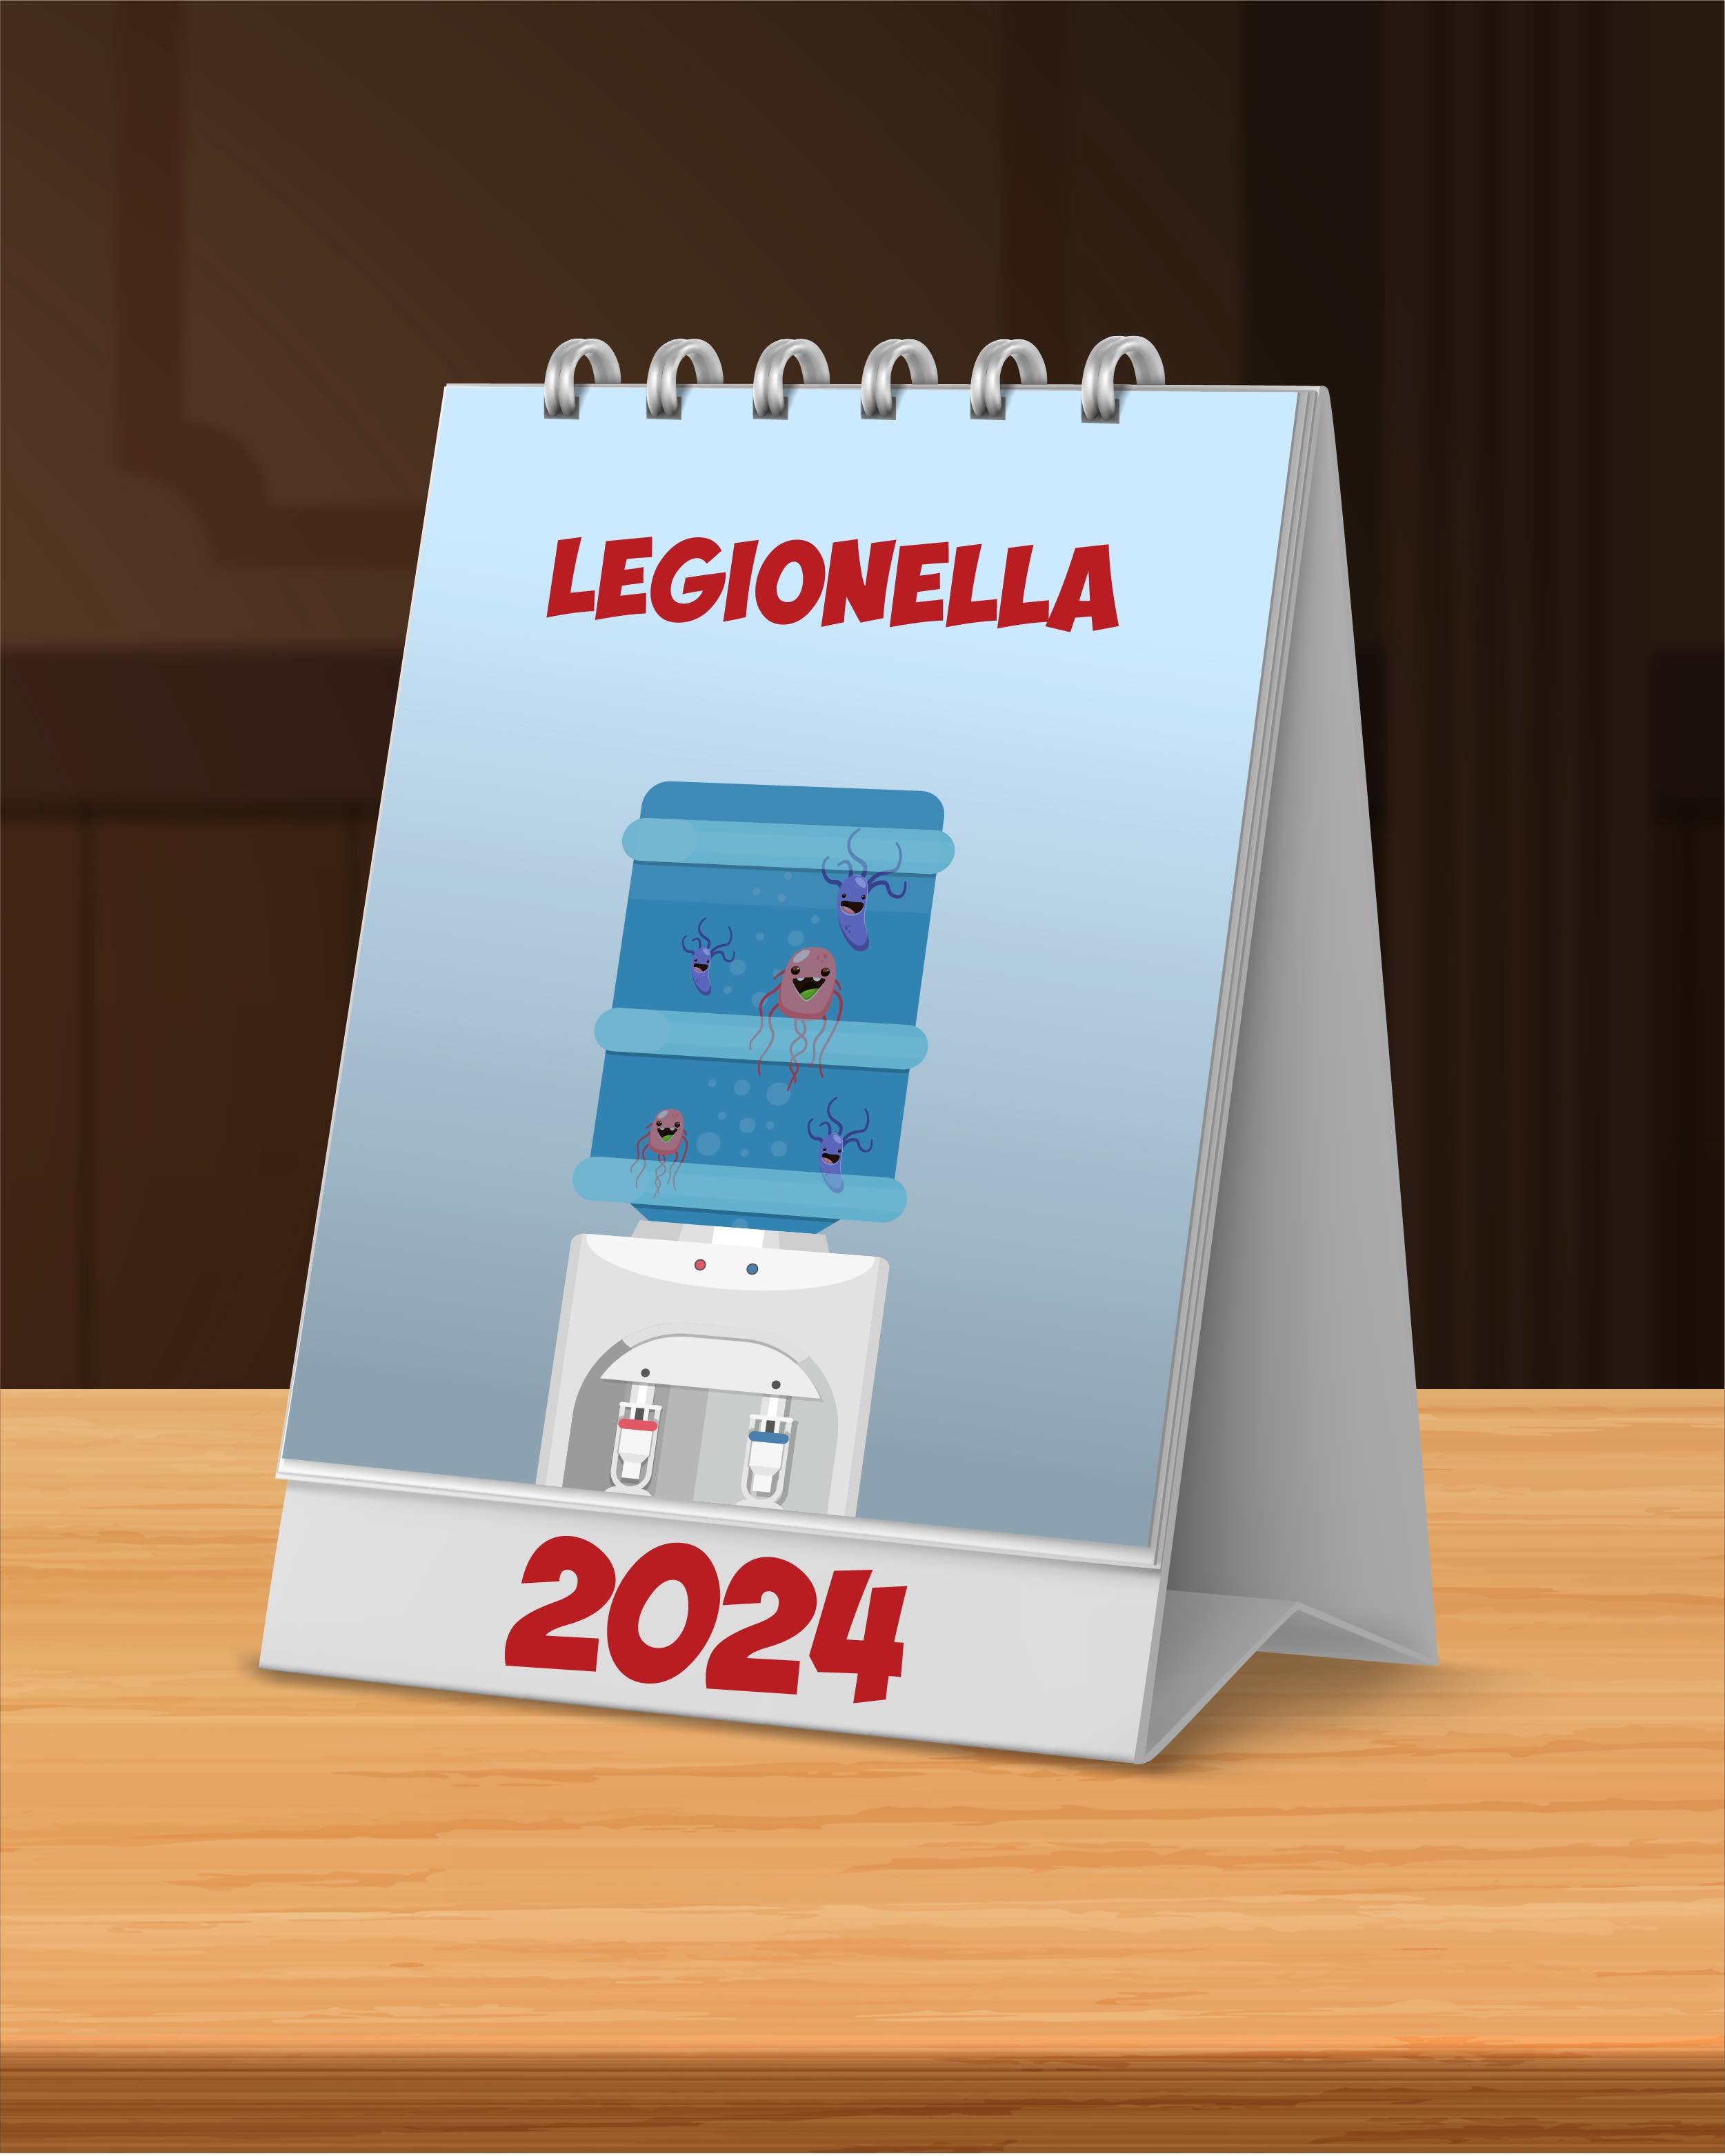 Compliance Calendar Campaign Landing Page Assets - Term 4 Legionella-01 (1)